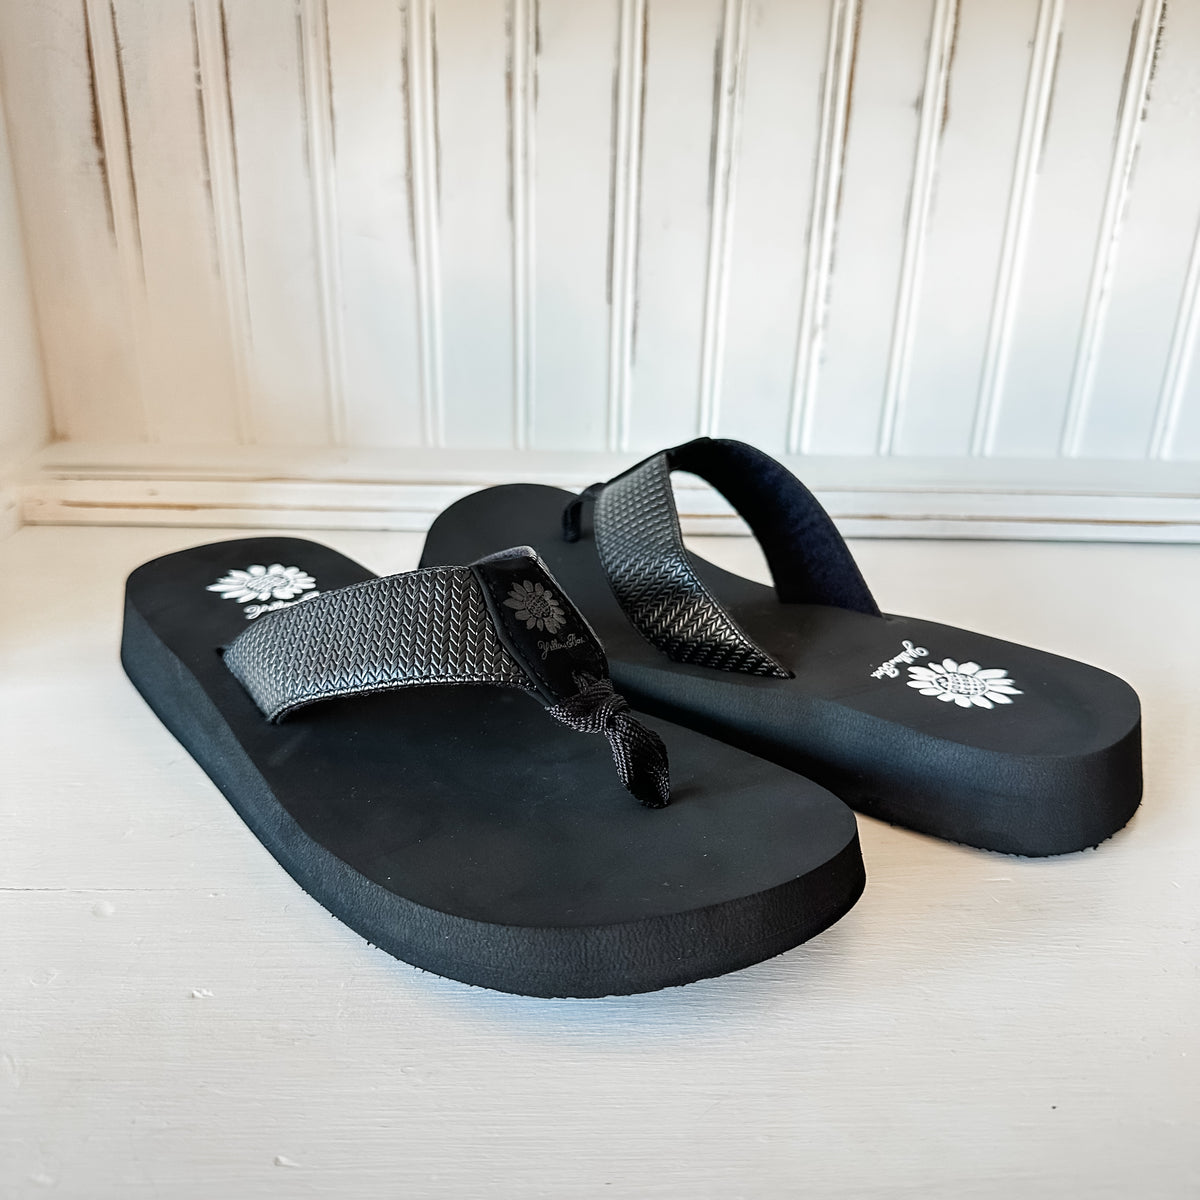 Flance Flip Flop Sandal - Black